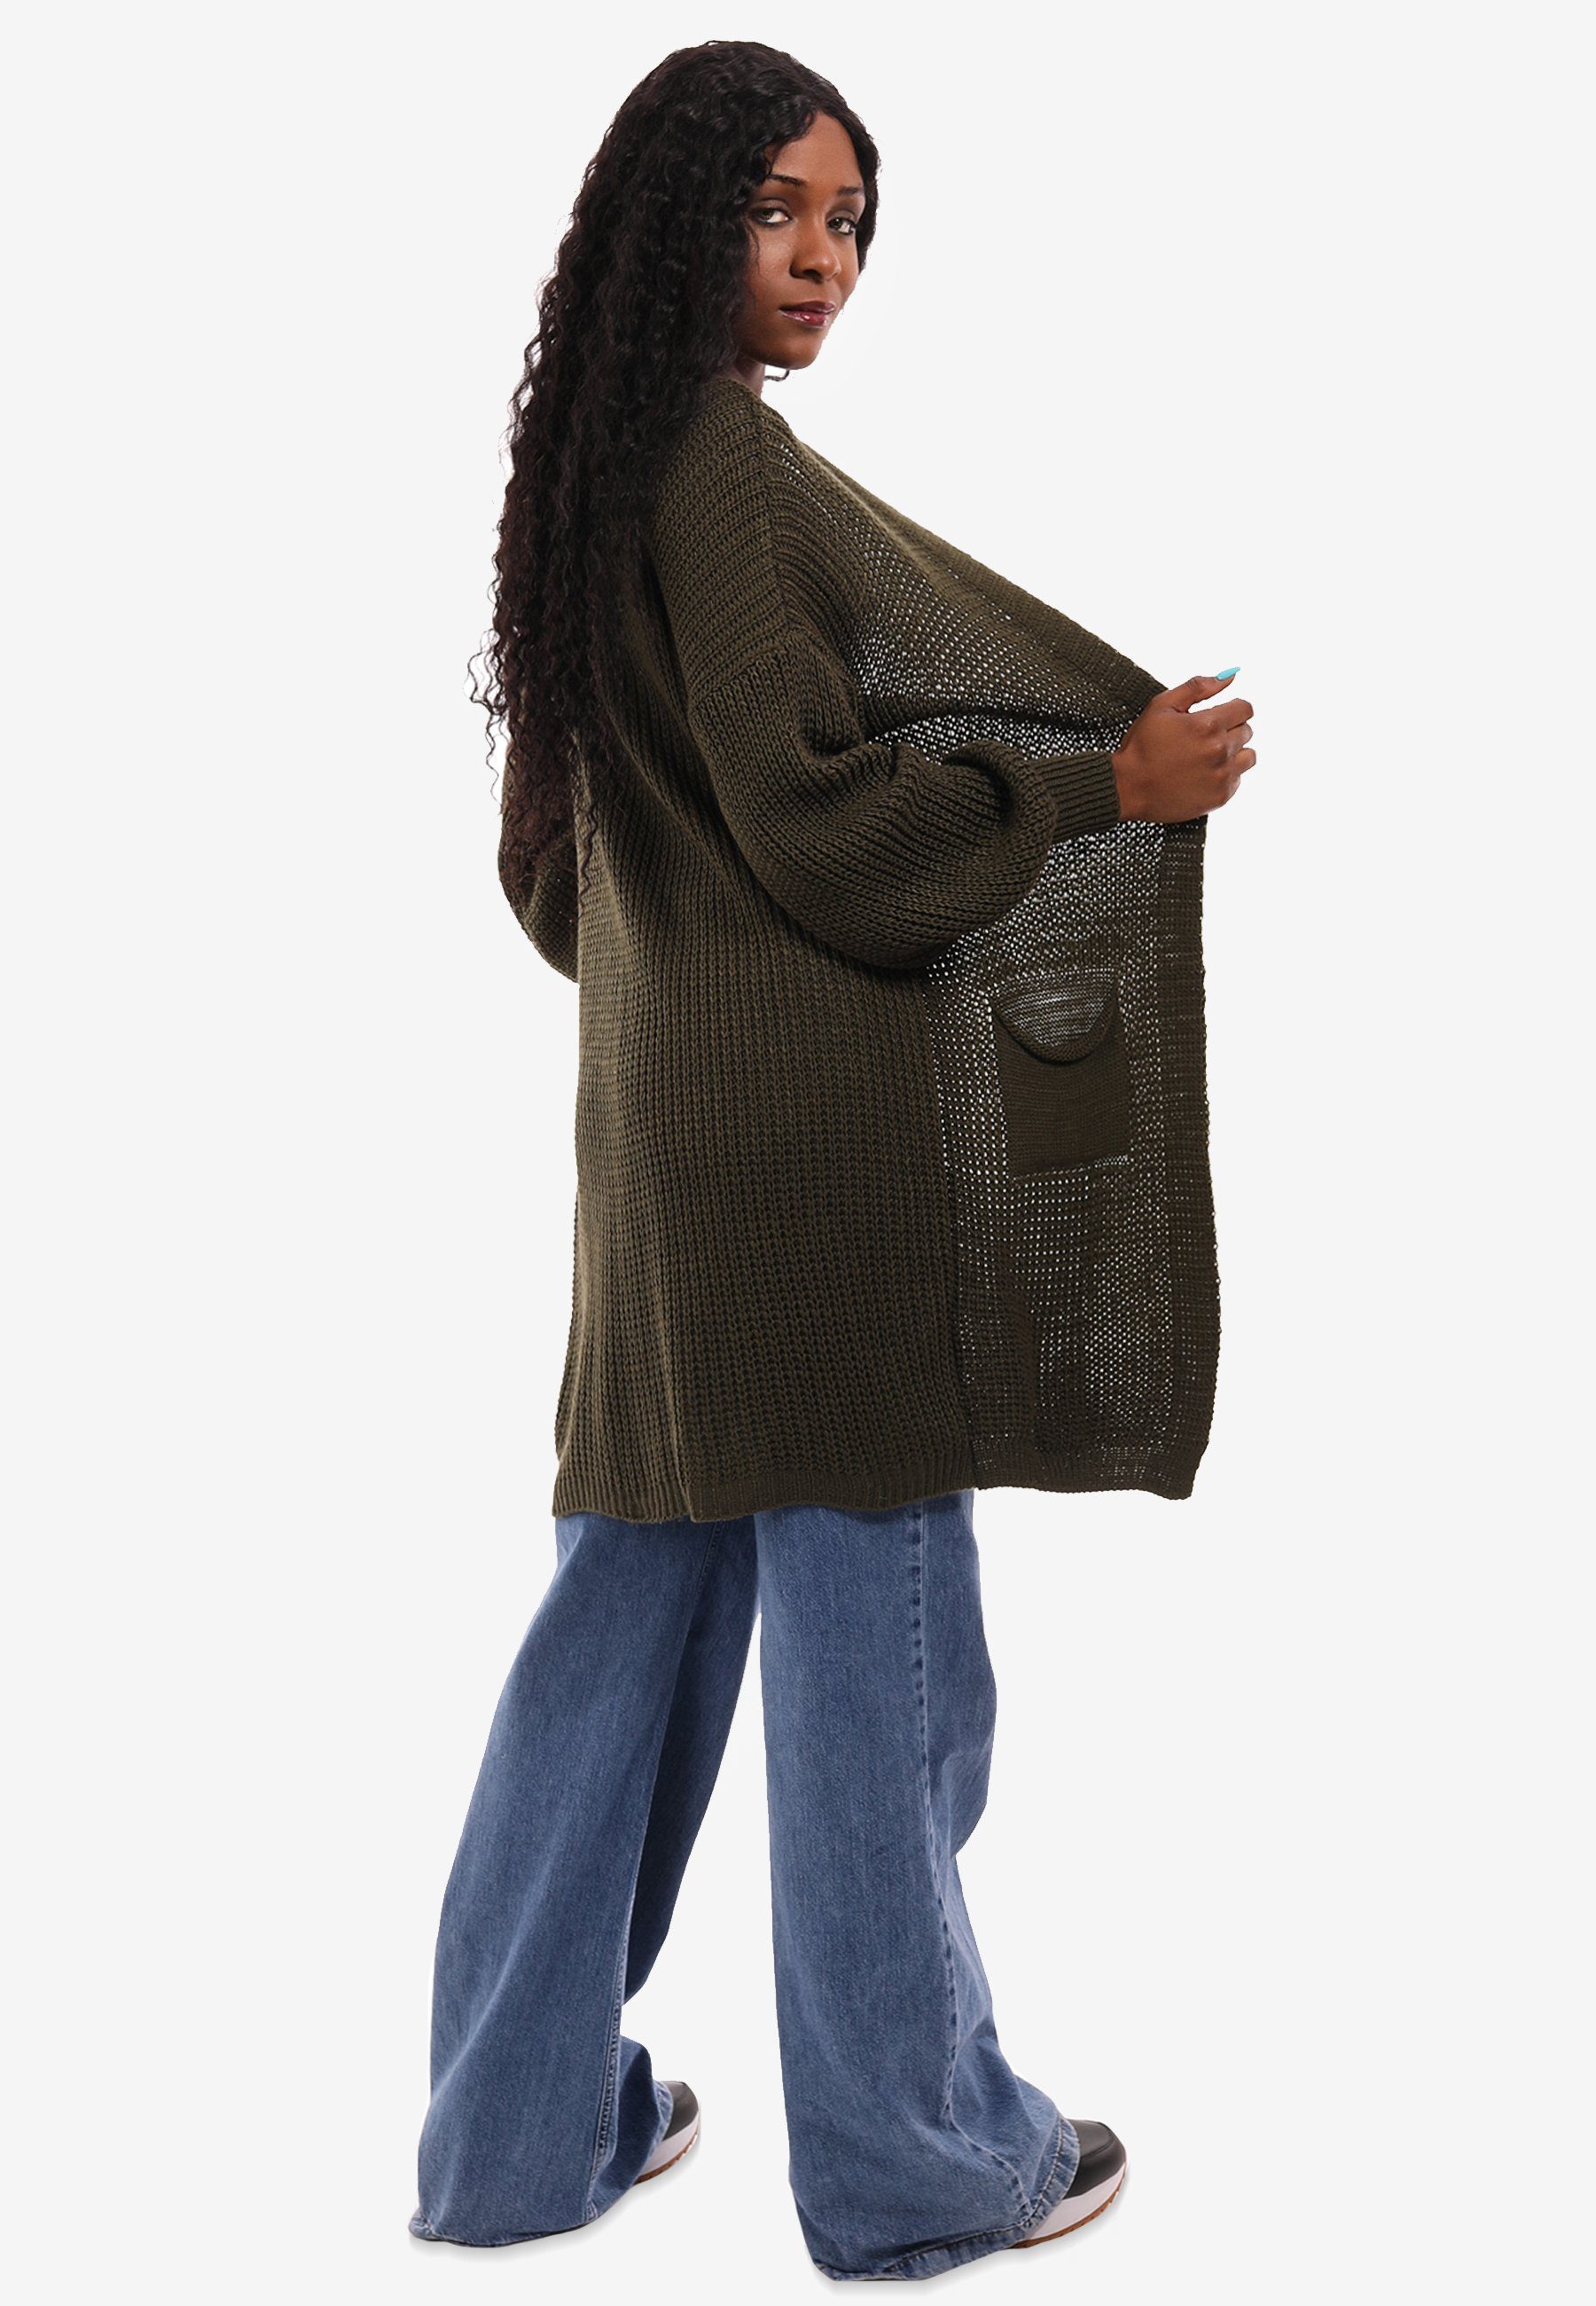 YC Fashion & Taschen Taschen mit Unifarbe, khaki Style aufgesetzten in One mit Cardigan Size Strick-Cardigan